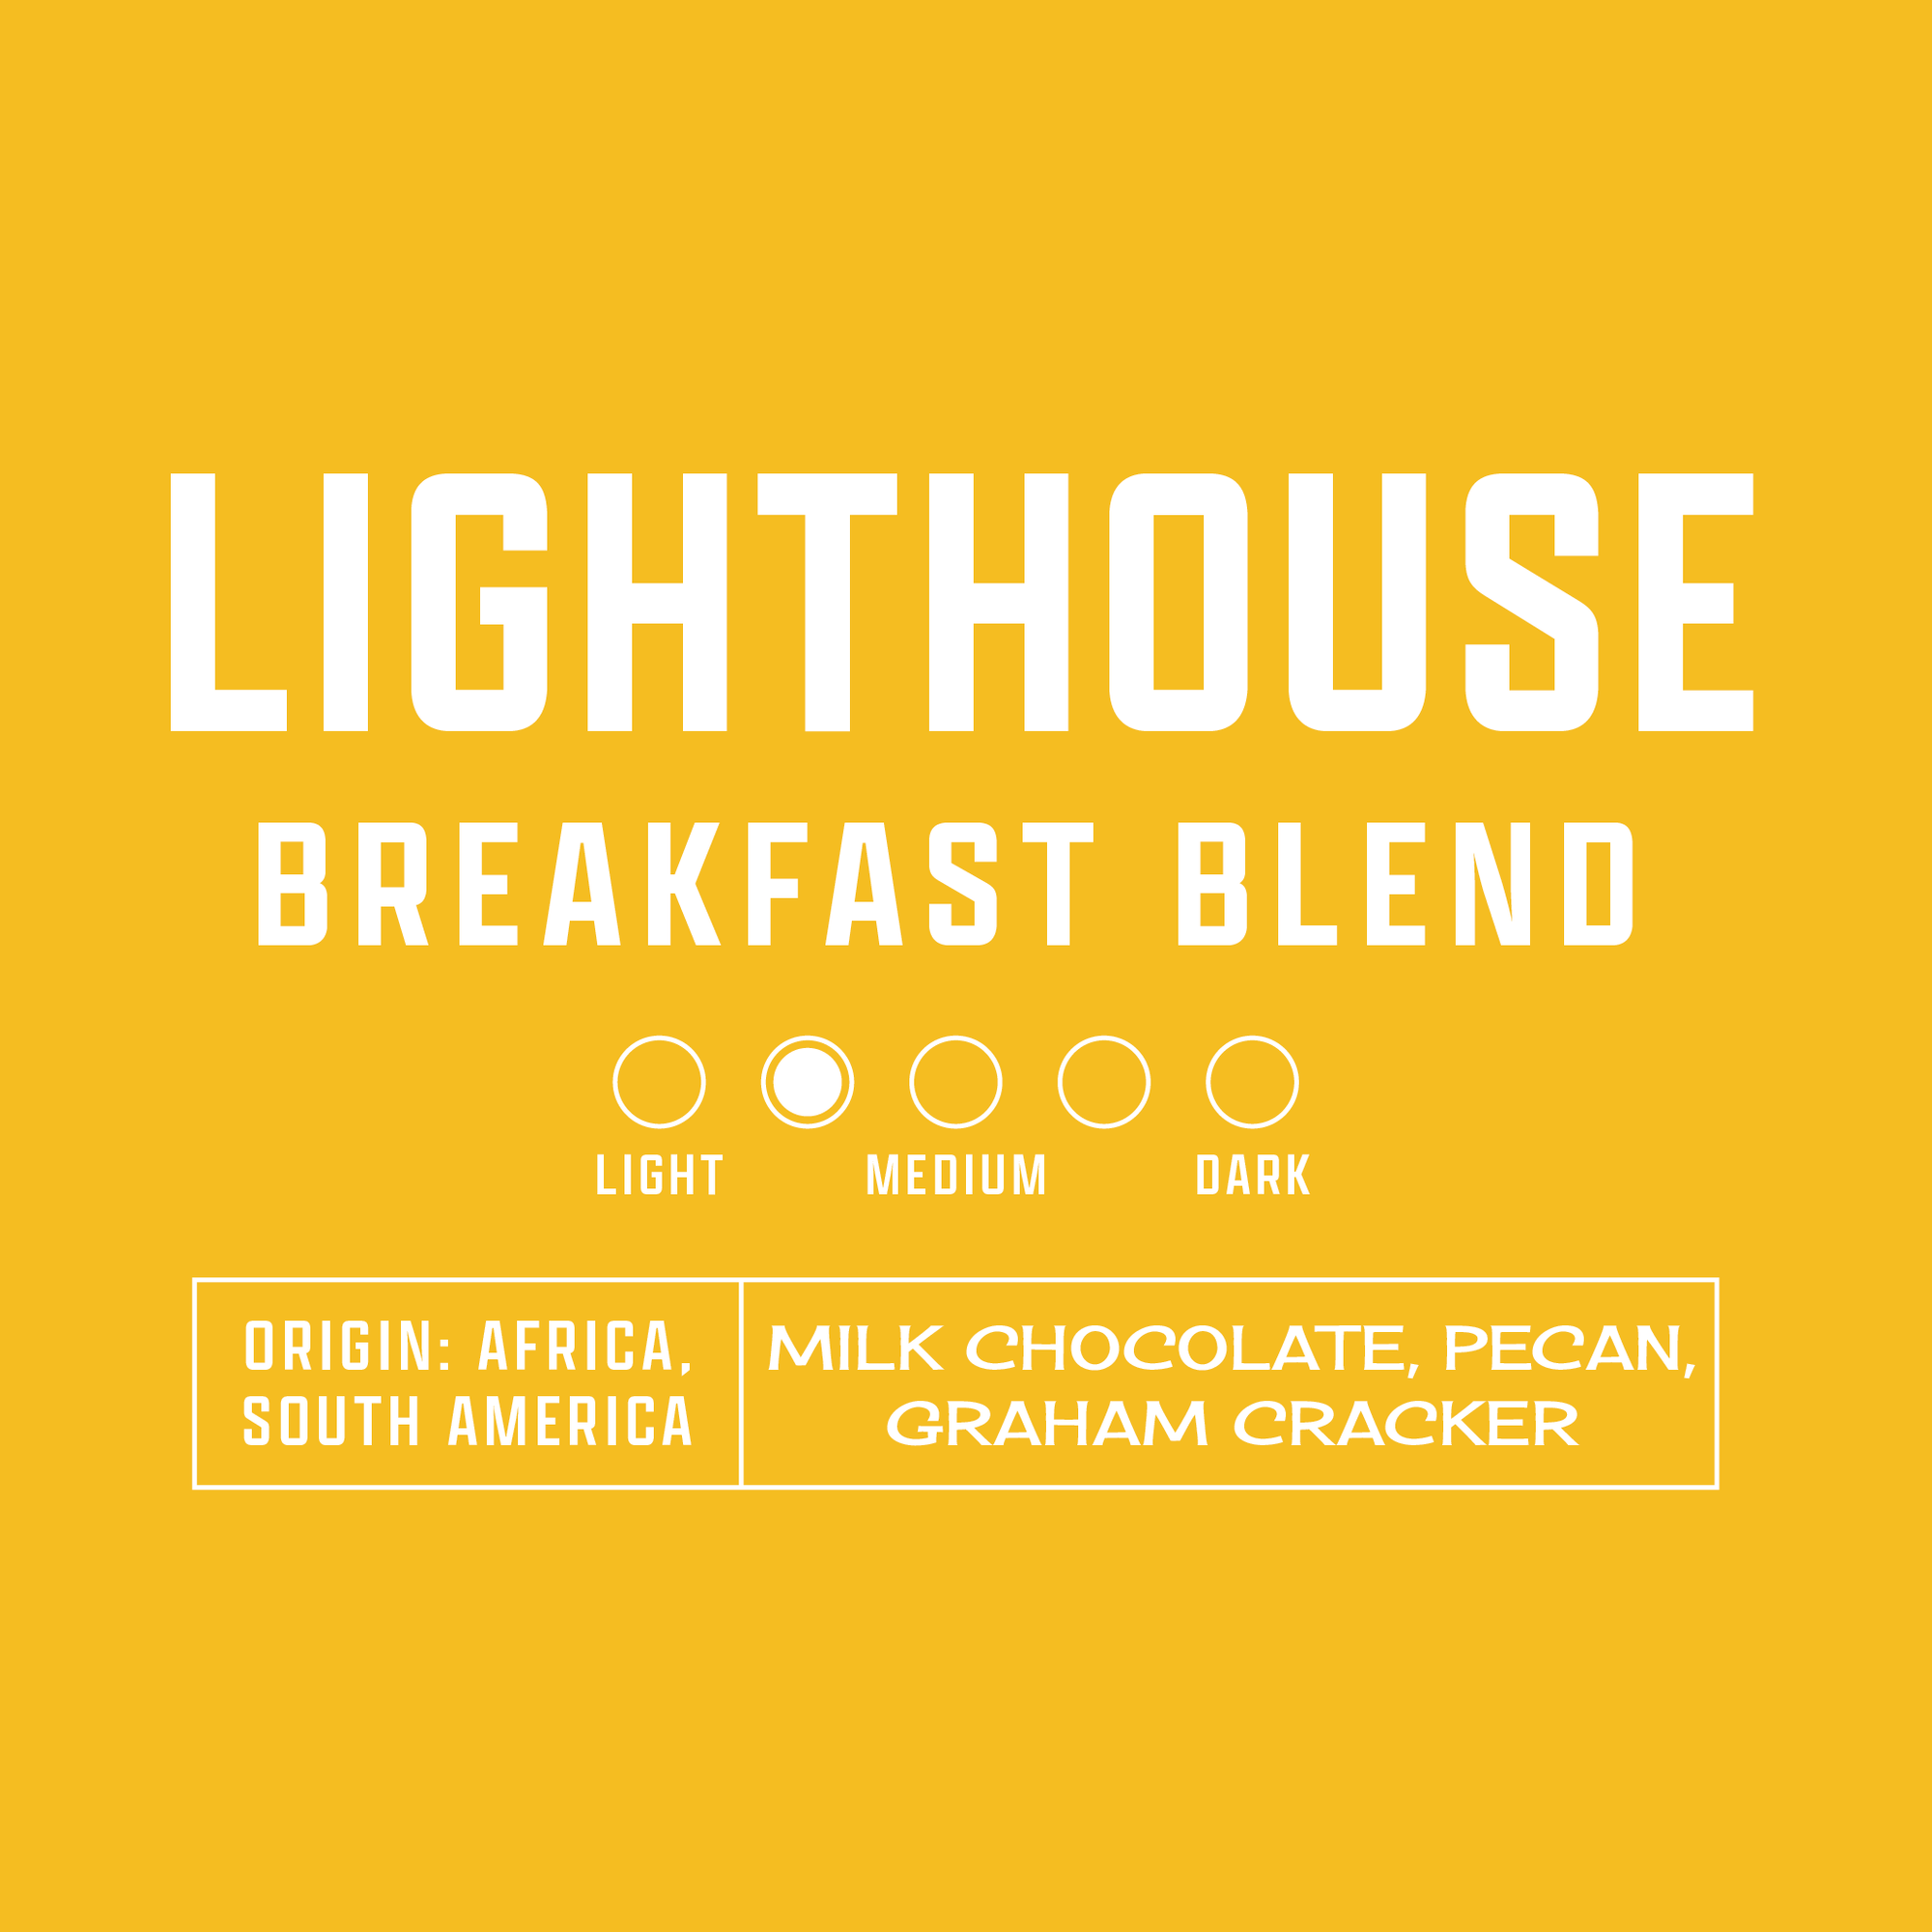 Lighthouse Breakfast Blend